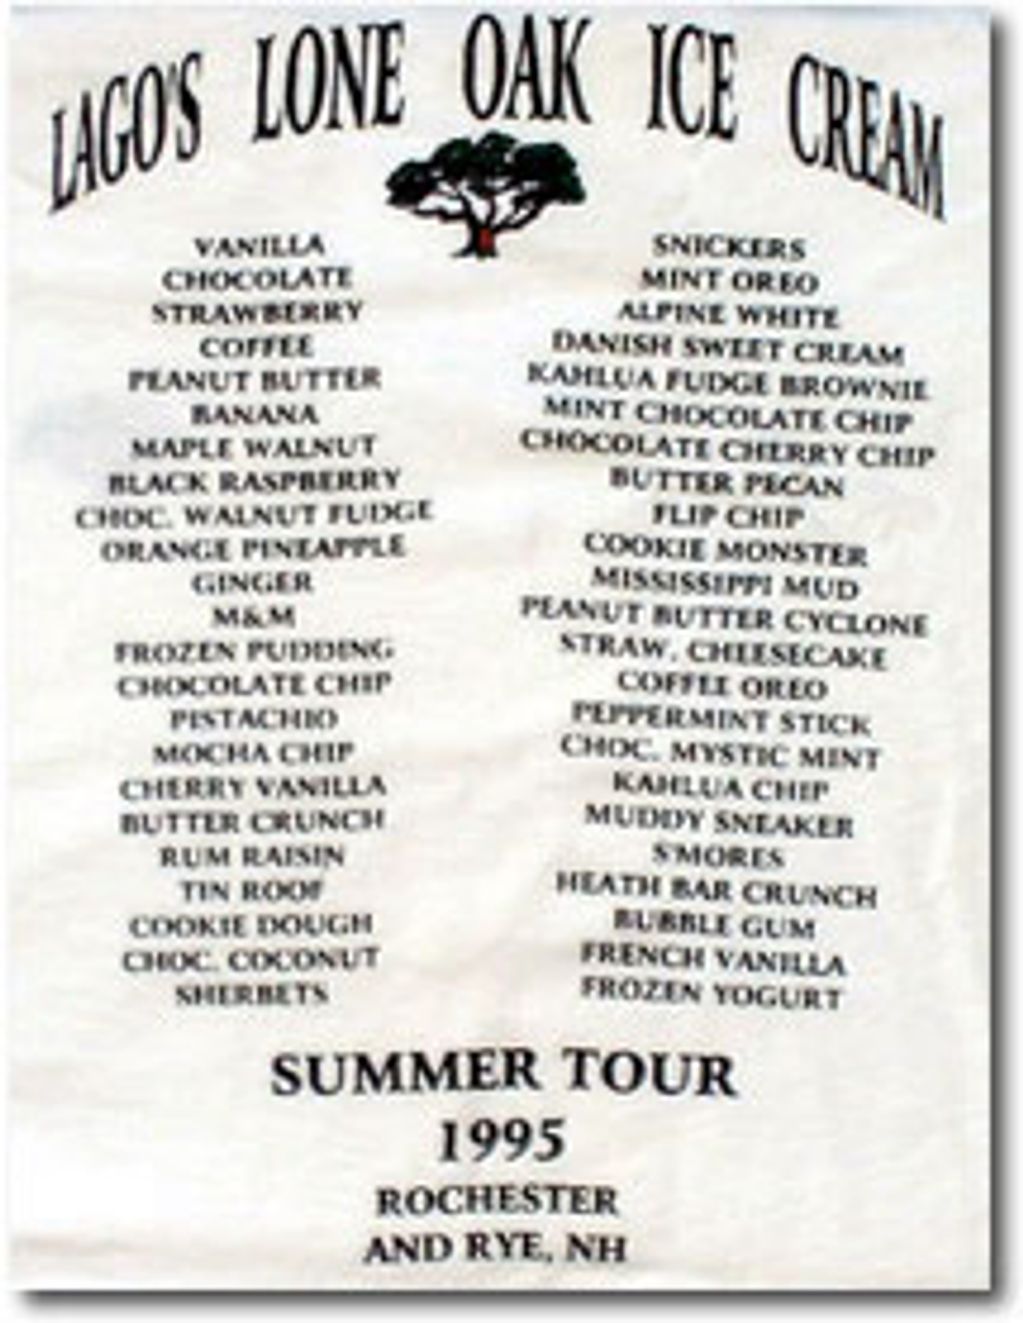 1995
SUMMER TOUR 